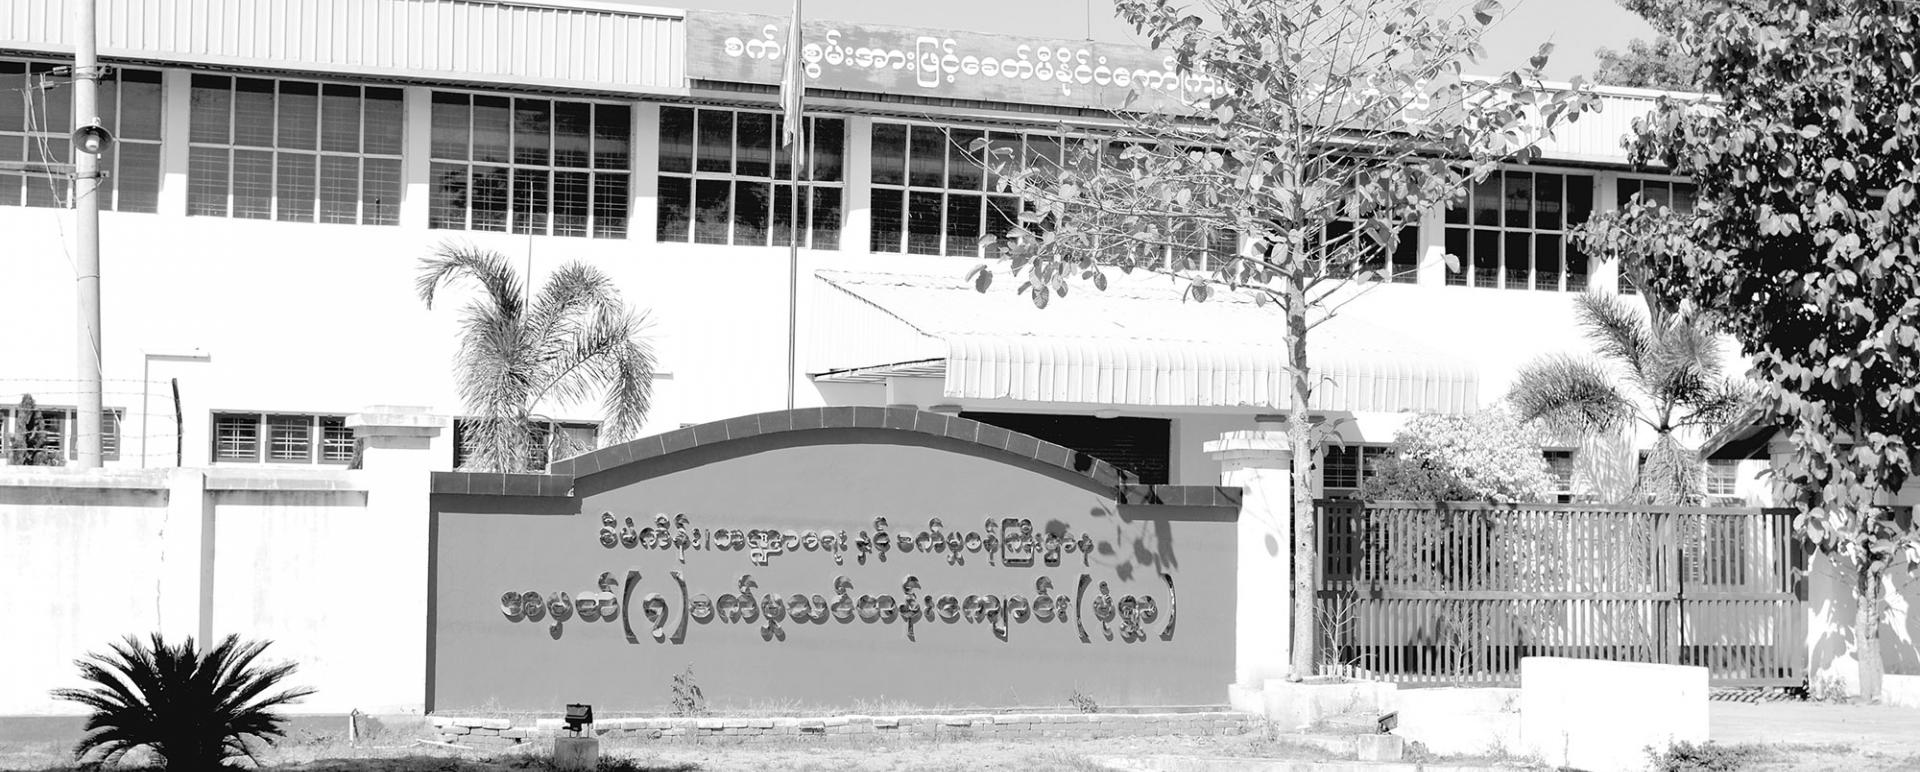 Technical High School in Monywa Township, Sagaing Region